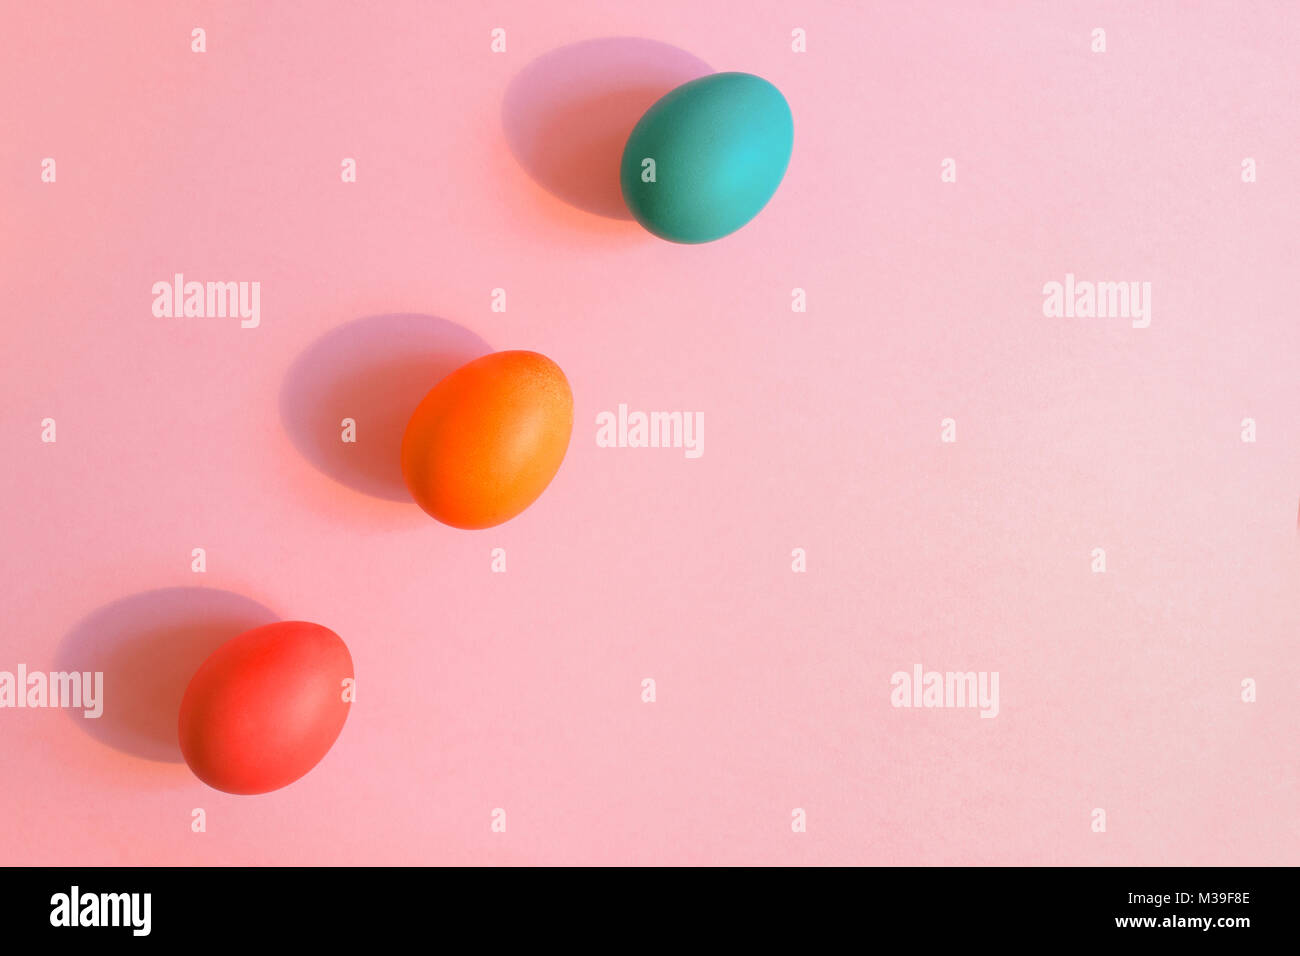 Flach drei Ostern bunt bemalte Eier schräg auf einem rosa Hintergrund mit Kopie Raum liegen. Stockfoto